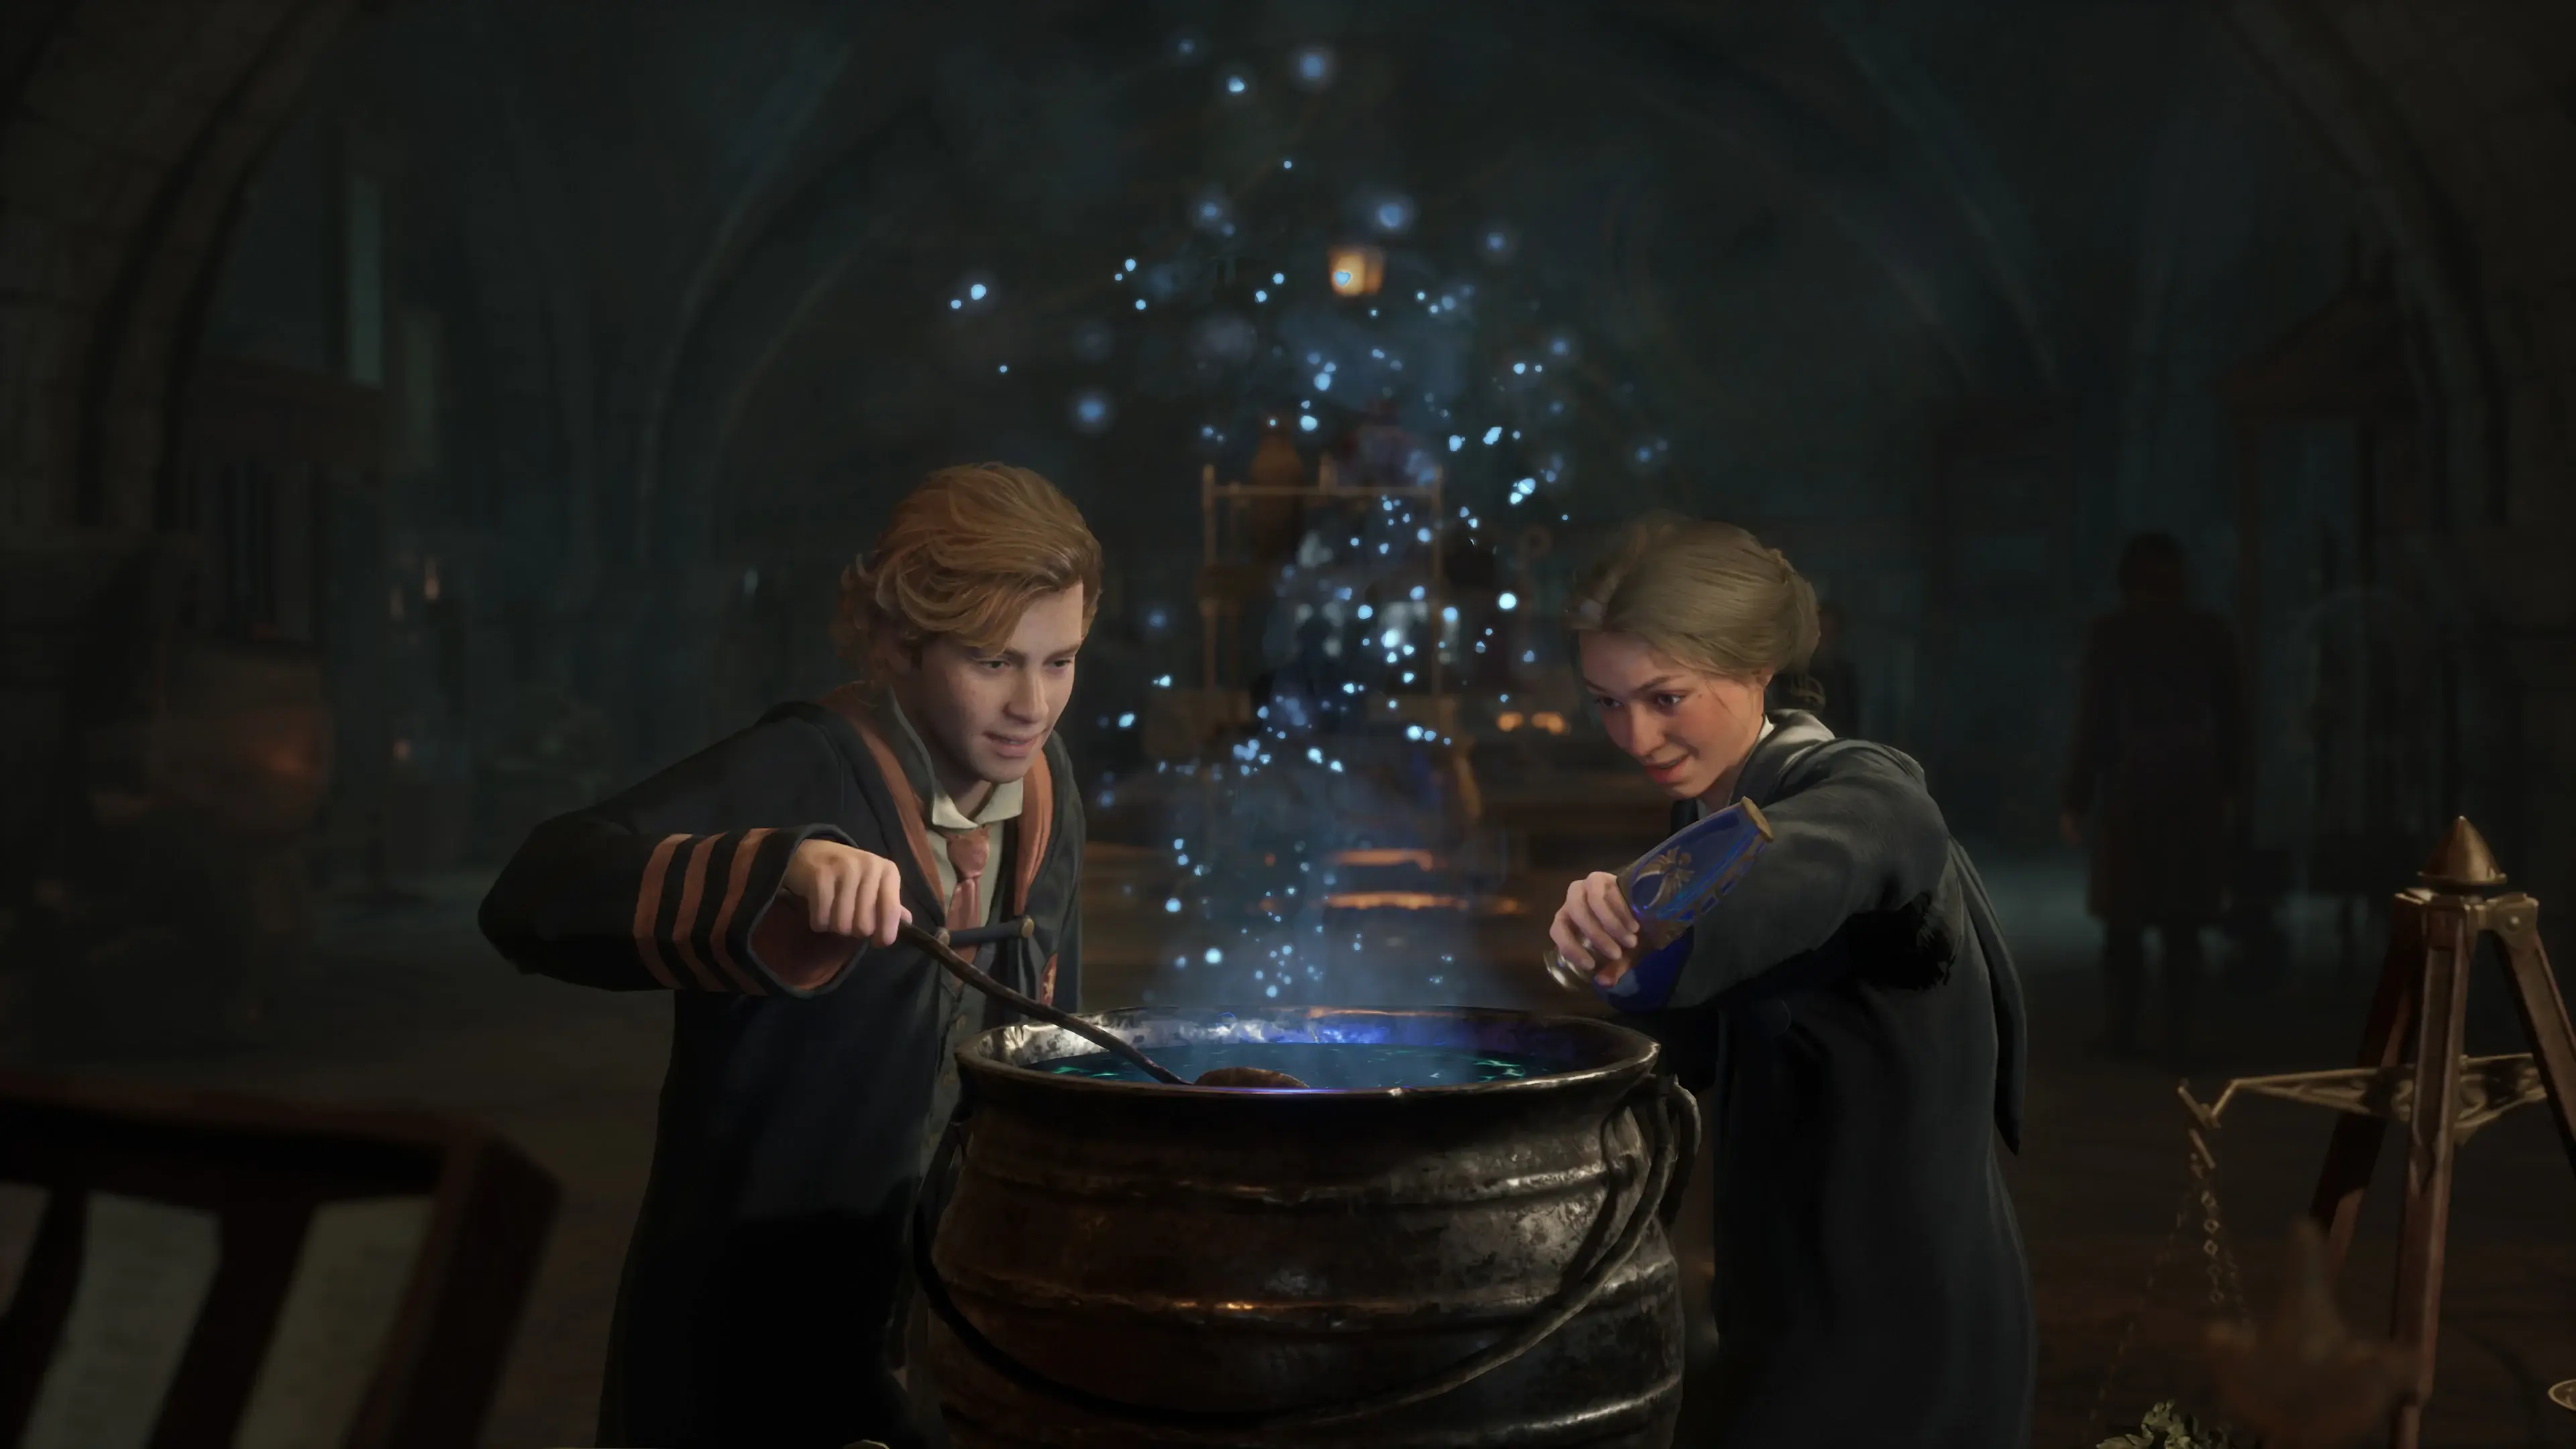  اکانت قانونی Hogwarts Legacy برای PS4 & PS5 